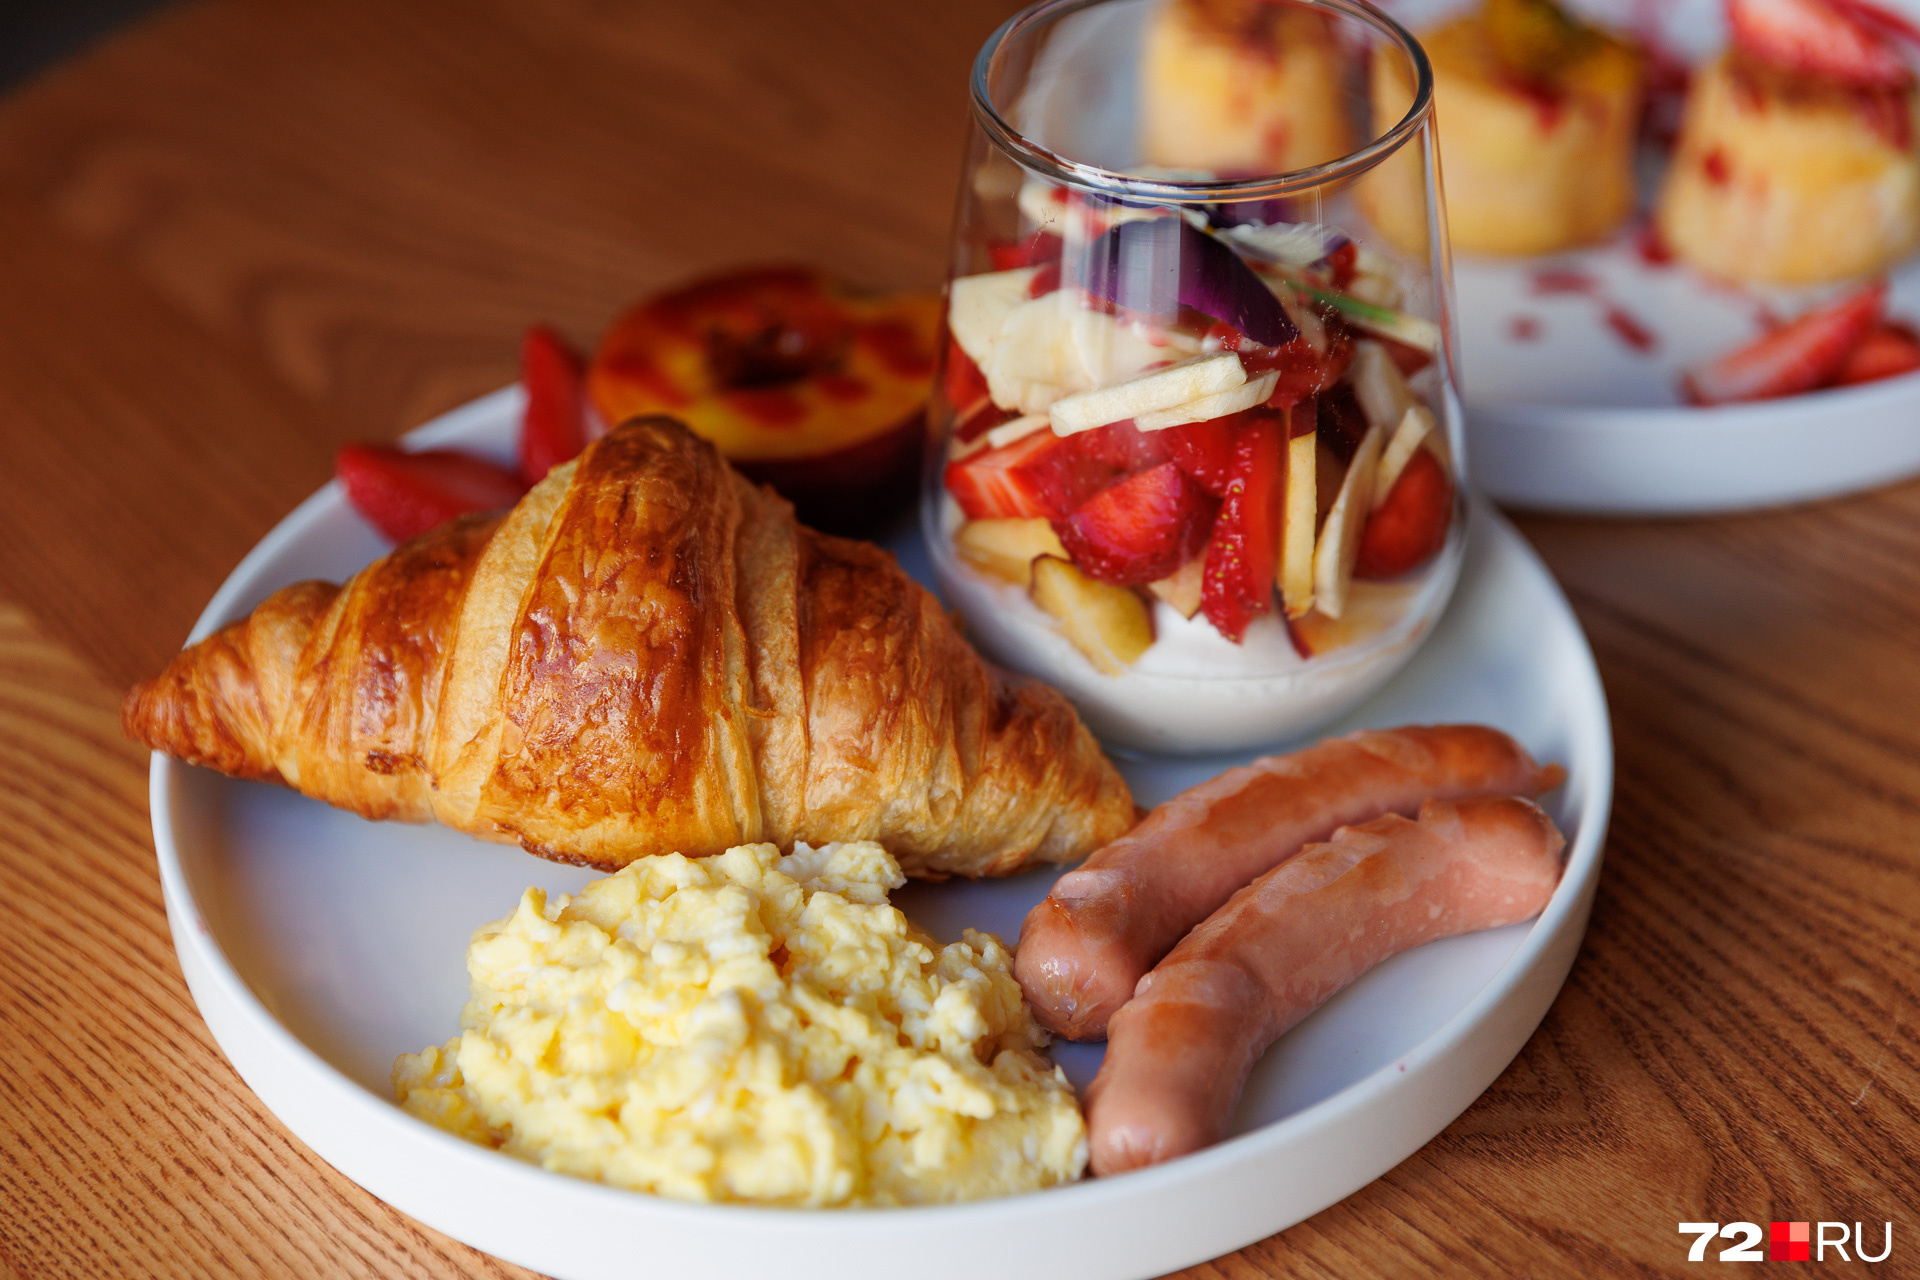 А так выглядит французский завтрак: скрэмбл, сосиски, карамелизированный персик, варенье, свежие ягоды, круассан и йогурт. Стоит такое сытное блюдо 500 рублей